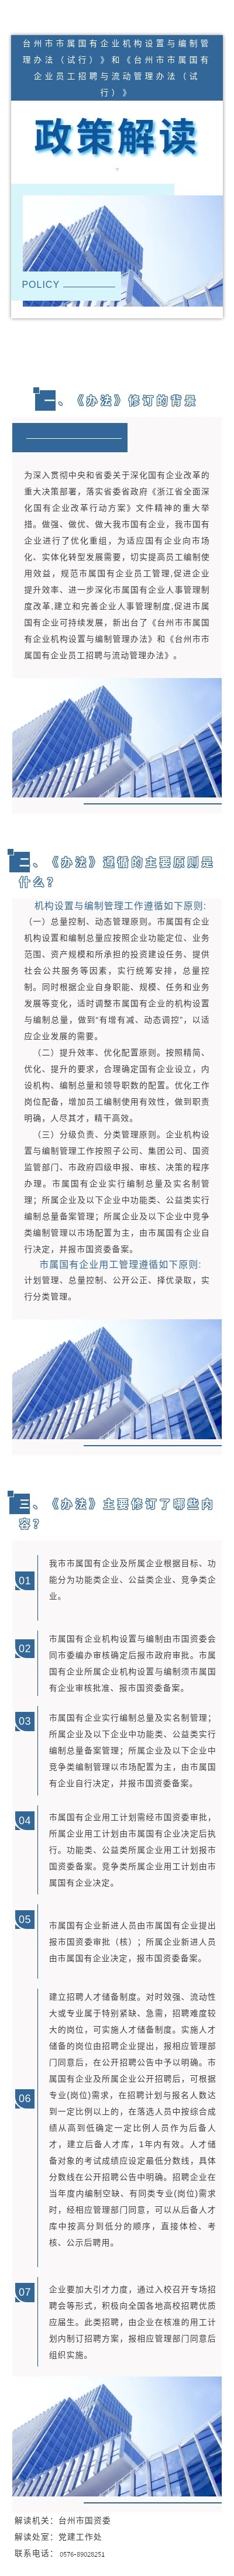 台州市市属国有企业机构设置与编制管理办法（试行）》和《台州市市属国有企业员工招聘与流动管理办法（试行）》解读.png